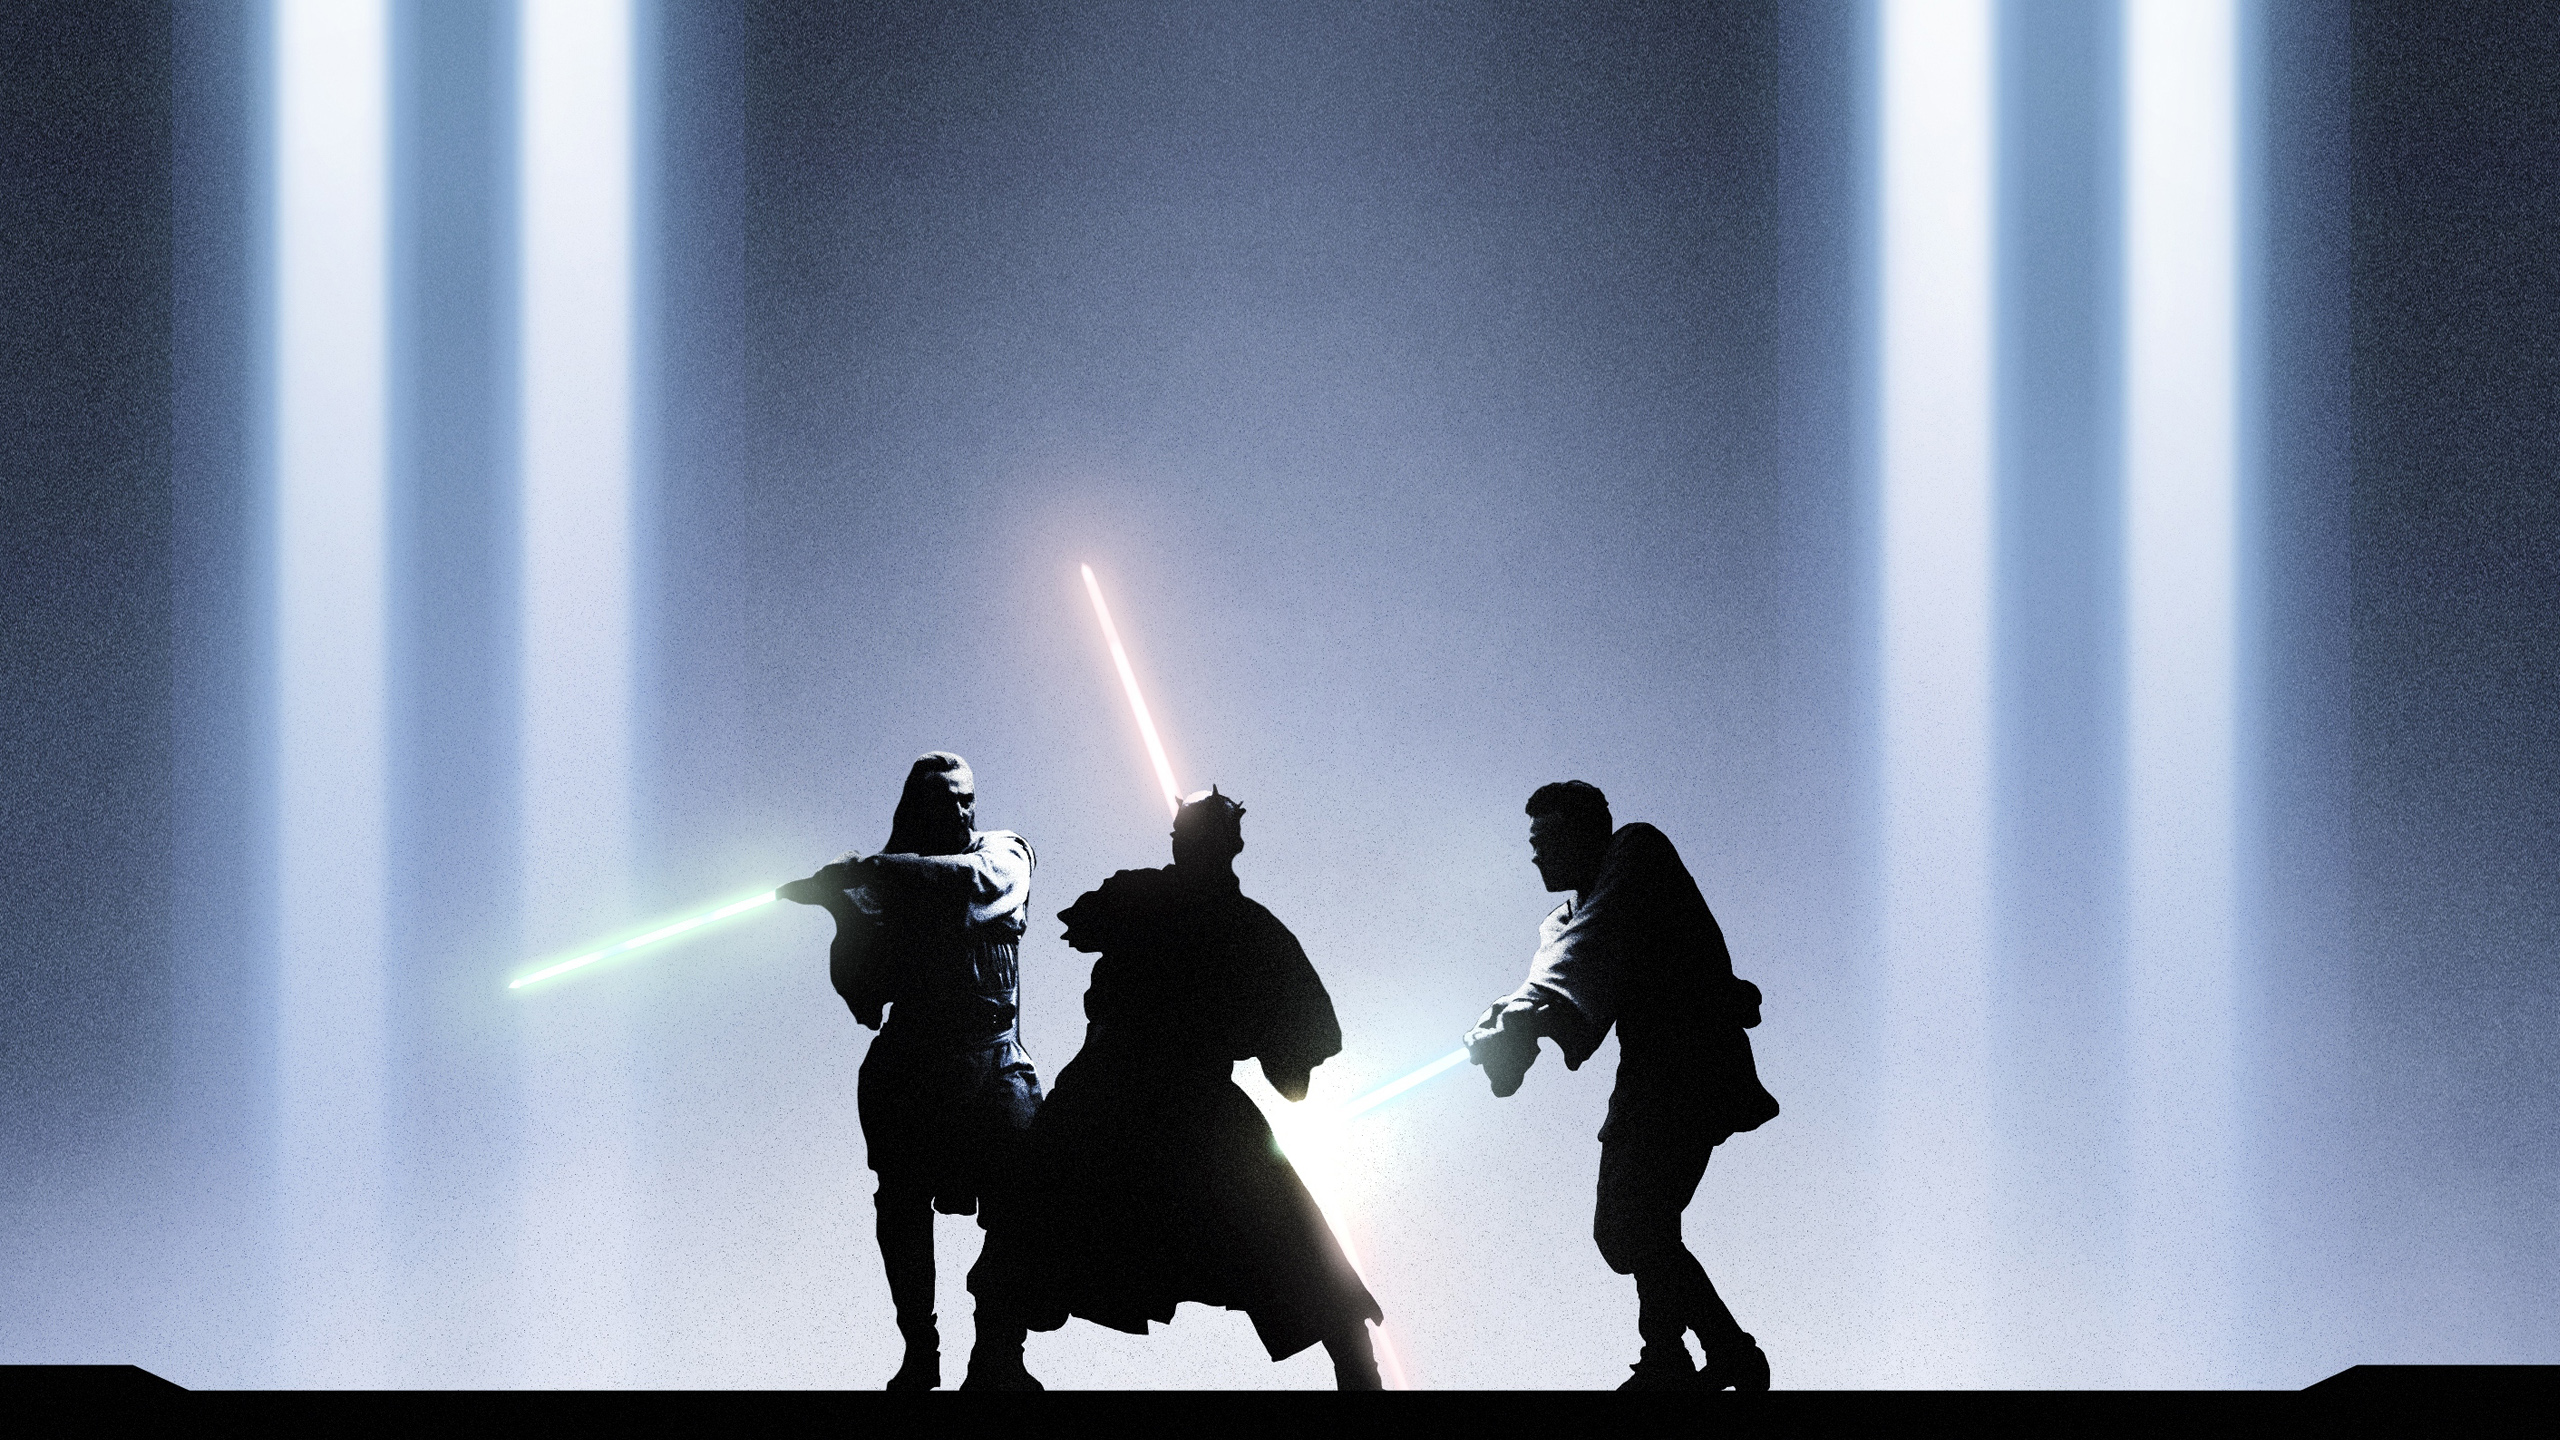 General 2560x1440 Star Wars Darth Maul Obi-Wan Kenobi Qui-Gon Jinn lights lightsaber Duel digital art